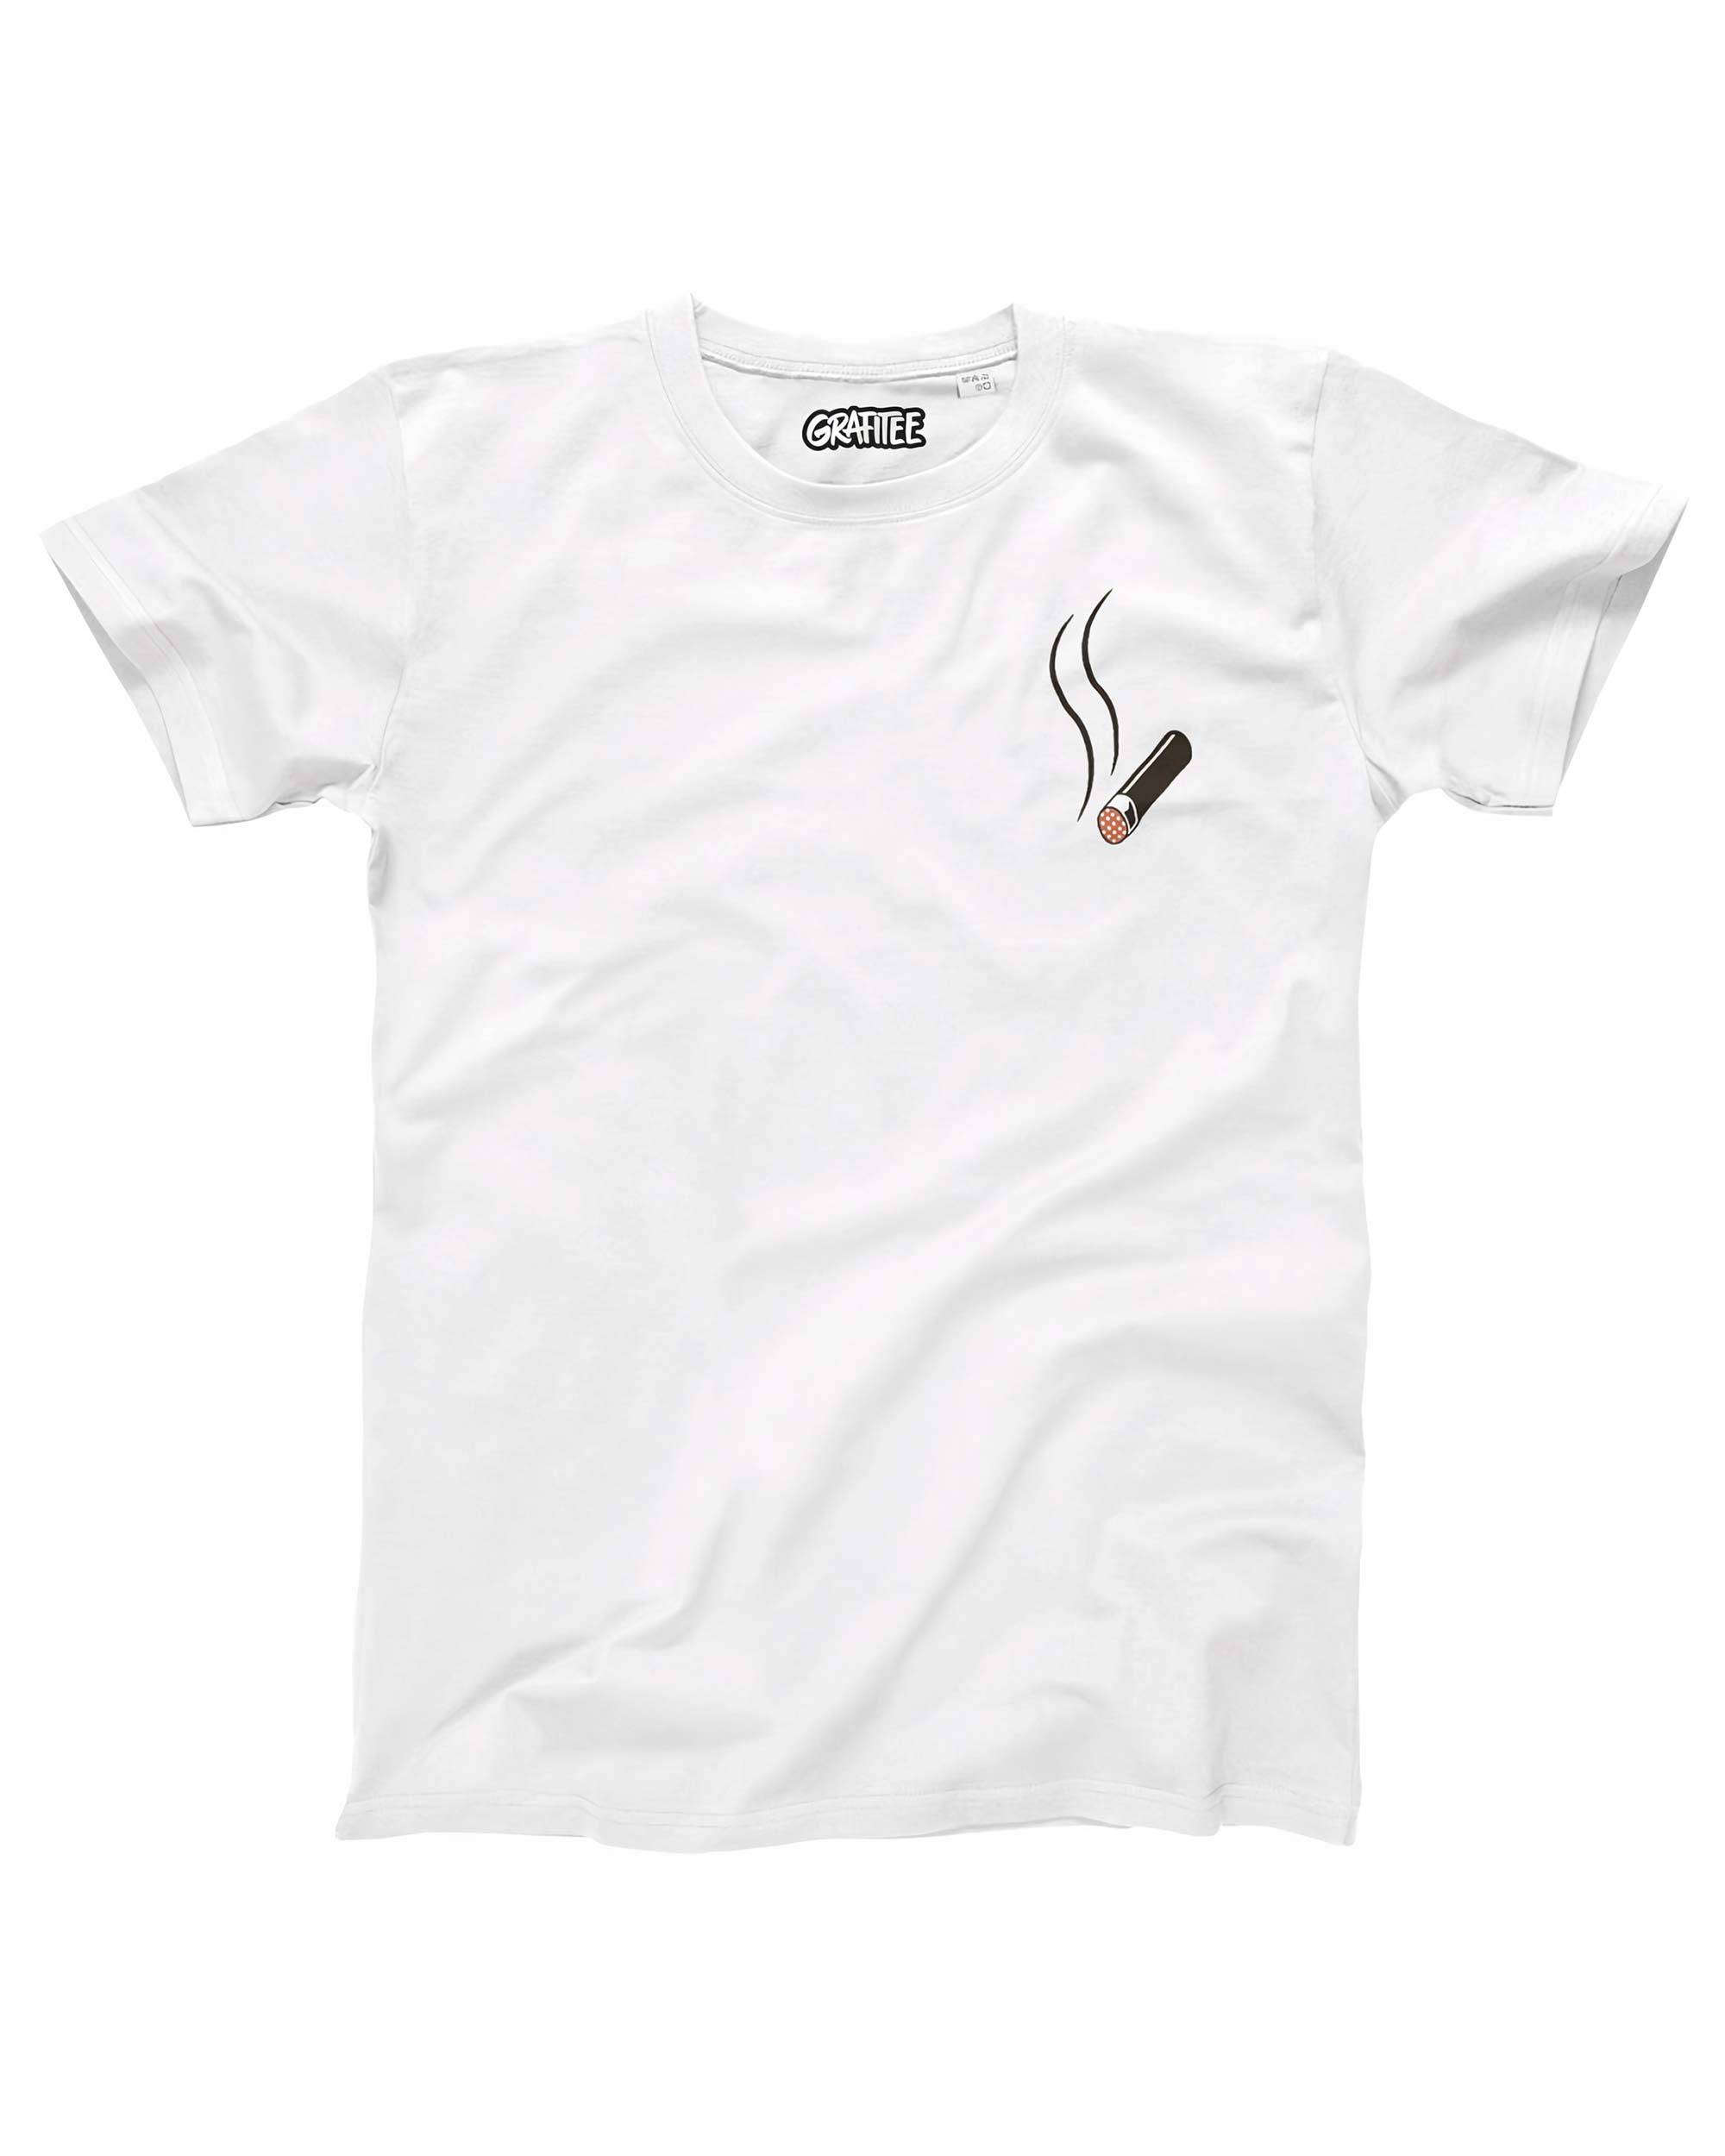 T-shirt Ashtray de couleur Blanc par Txipitxao